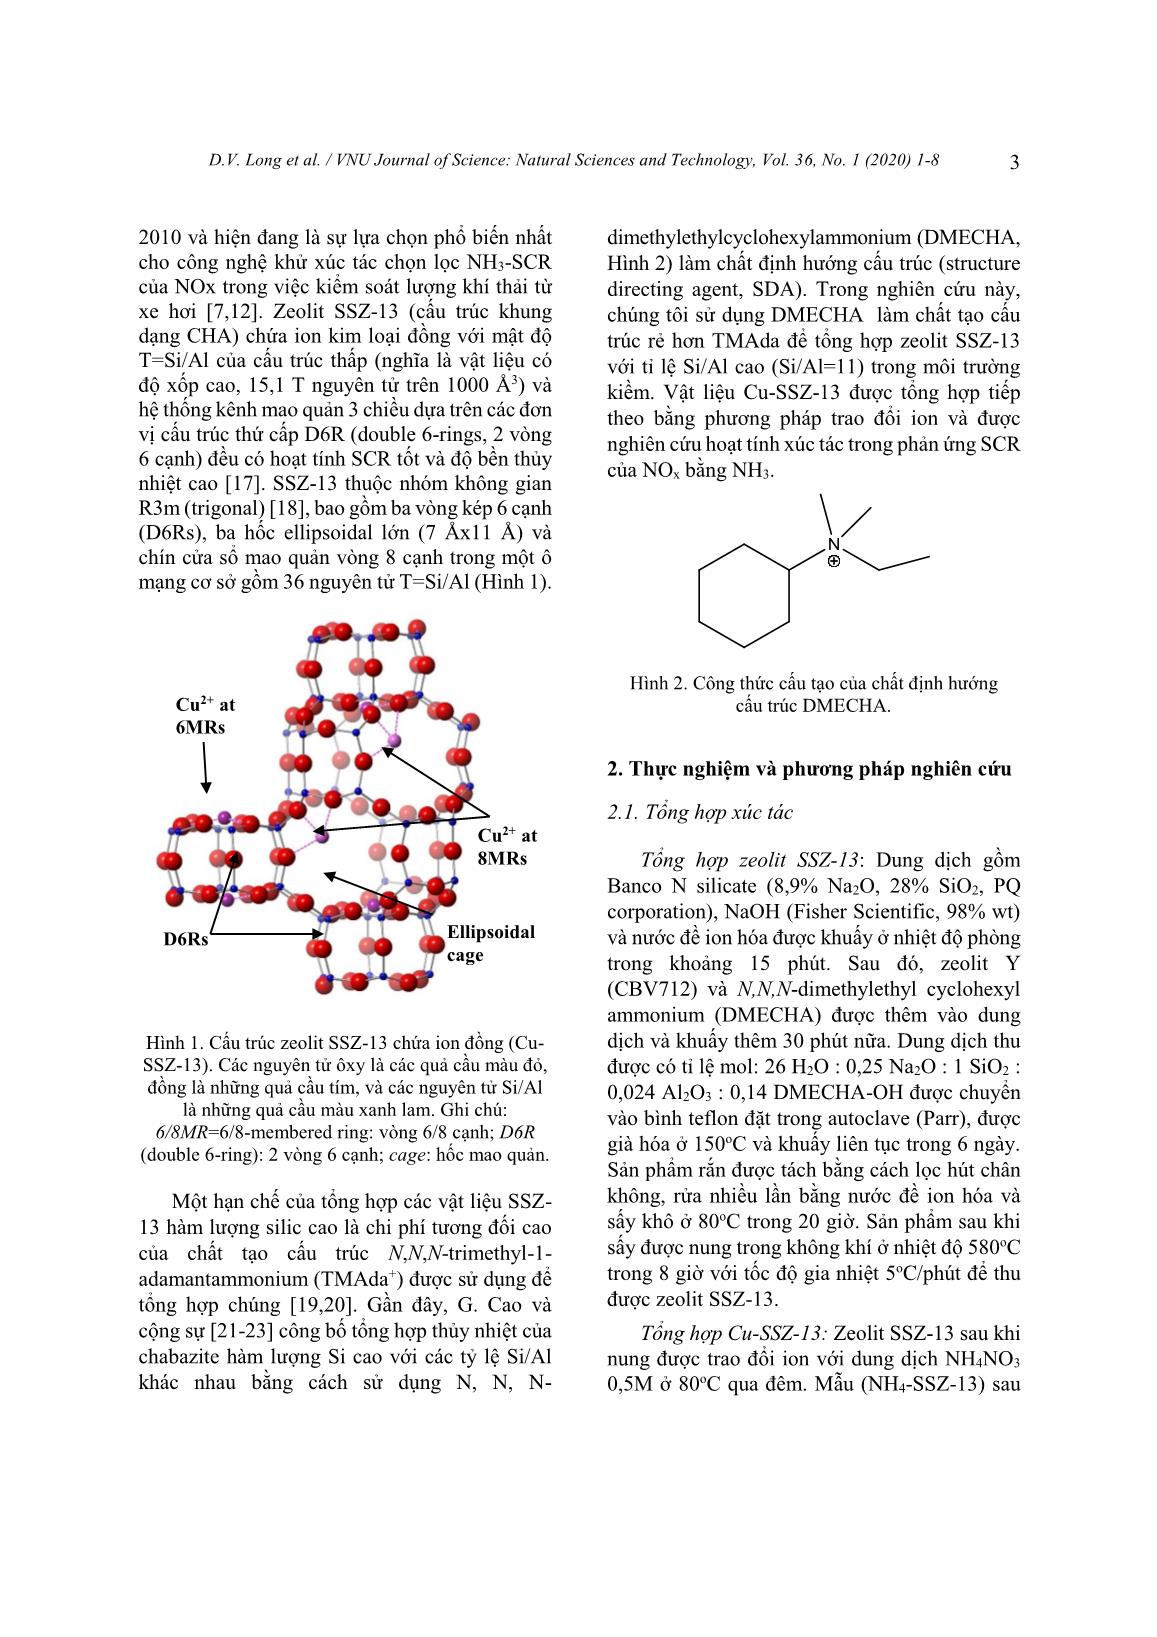 Tổng hợp zeolit SSZ-13 sử dụng chất định hướng cấu trúc N,N,N-Dimethylethylcyclohexyl ammonium ứng dụng trong phản ứng khử chọn lọc NOx trang 3